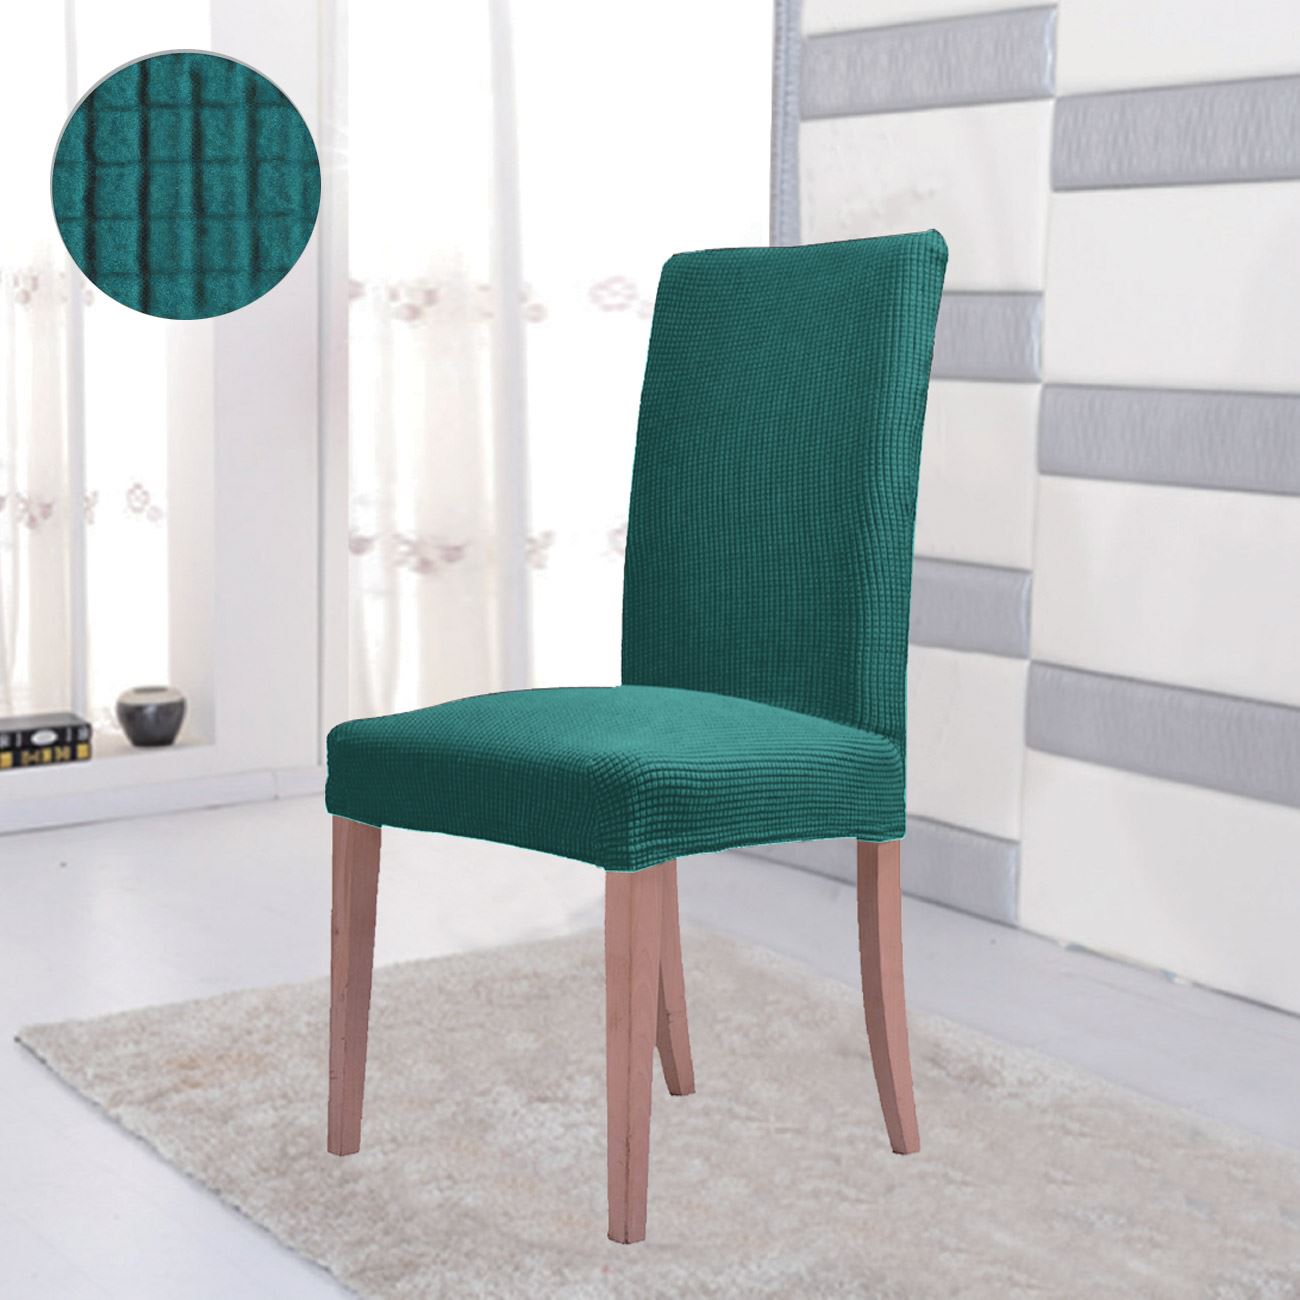 Elasztikus szék huzat Türkiz színű